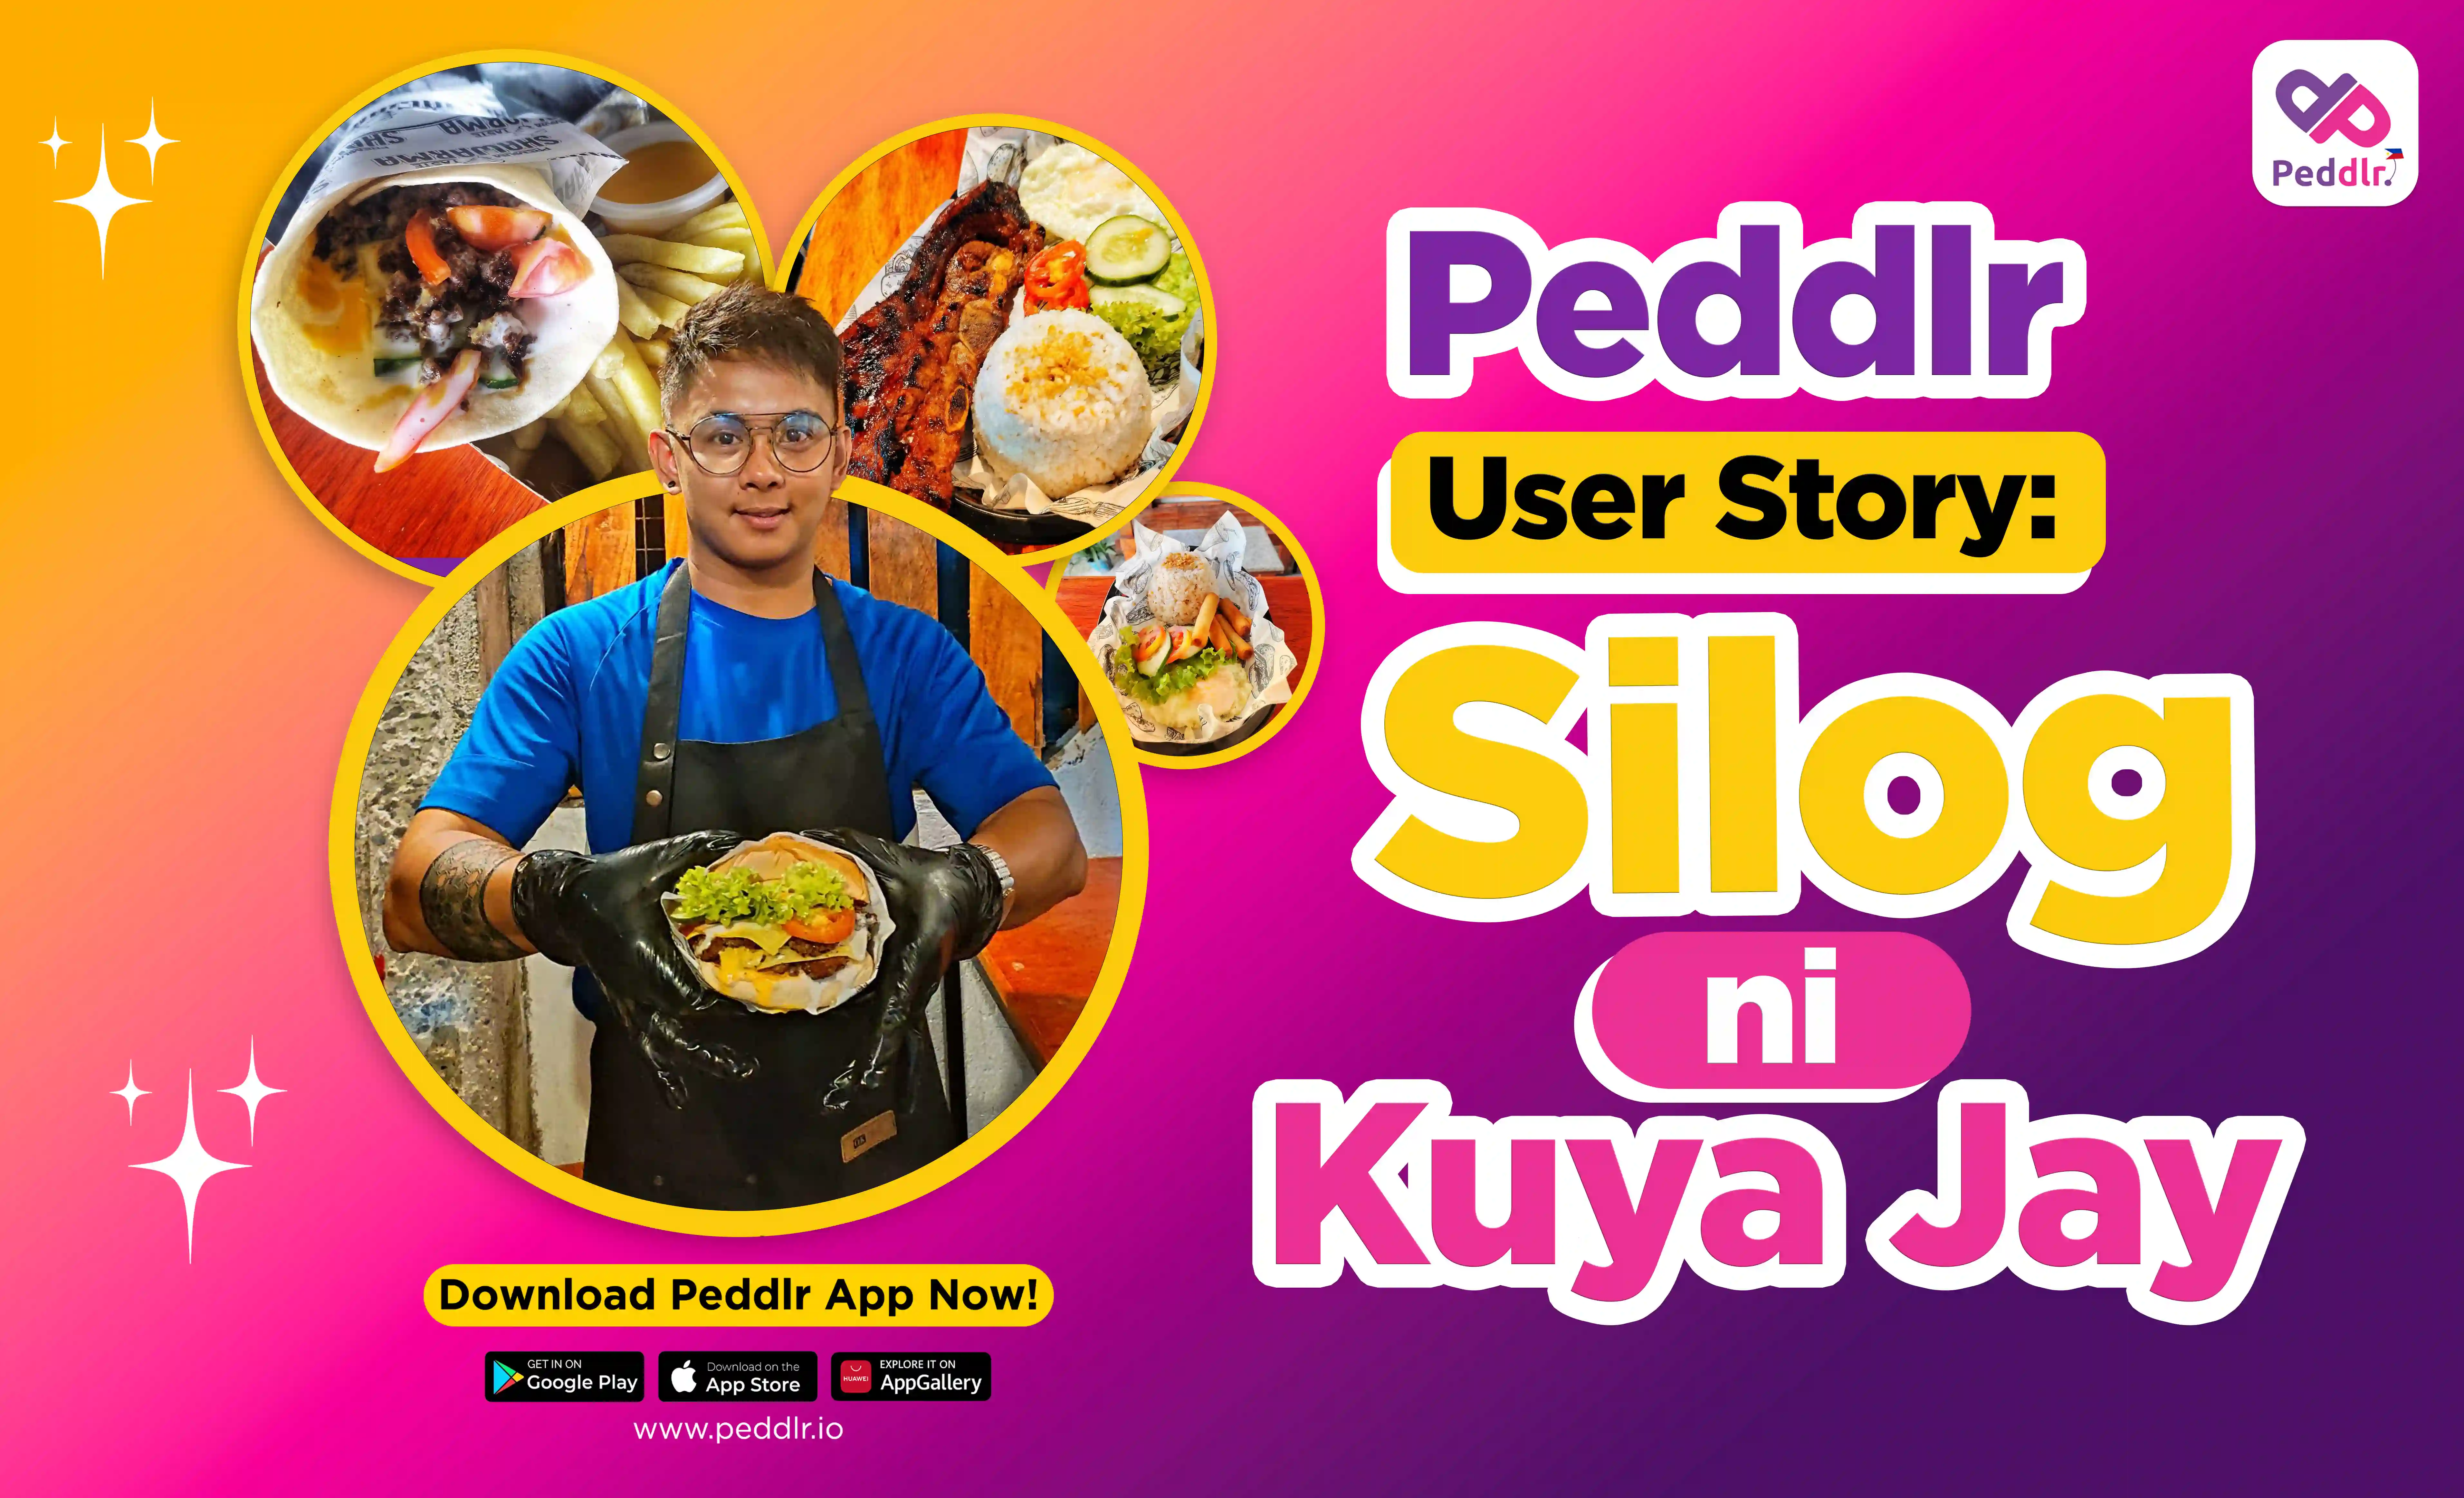 Peddlr User Story: Pagmonitor ng Food Business gamit ang Peddlr POS App